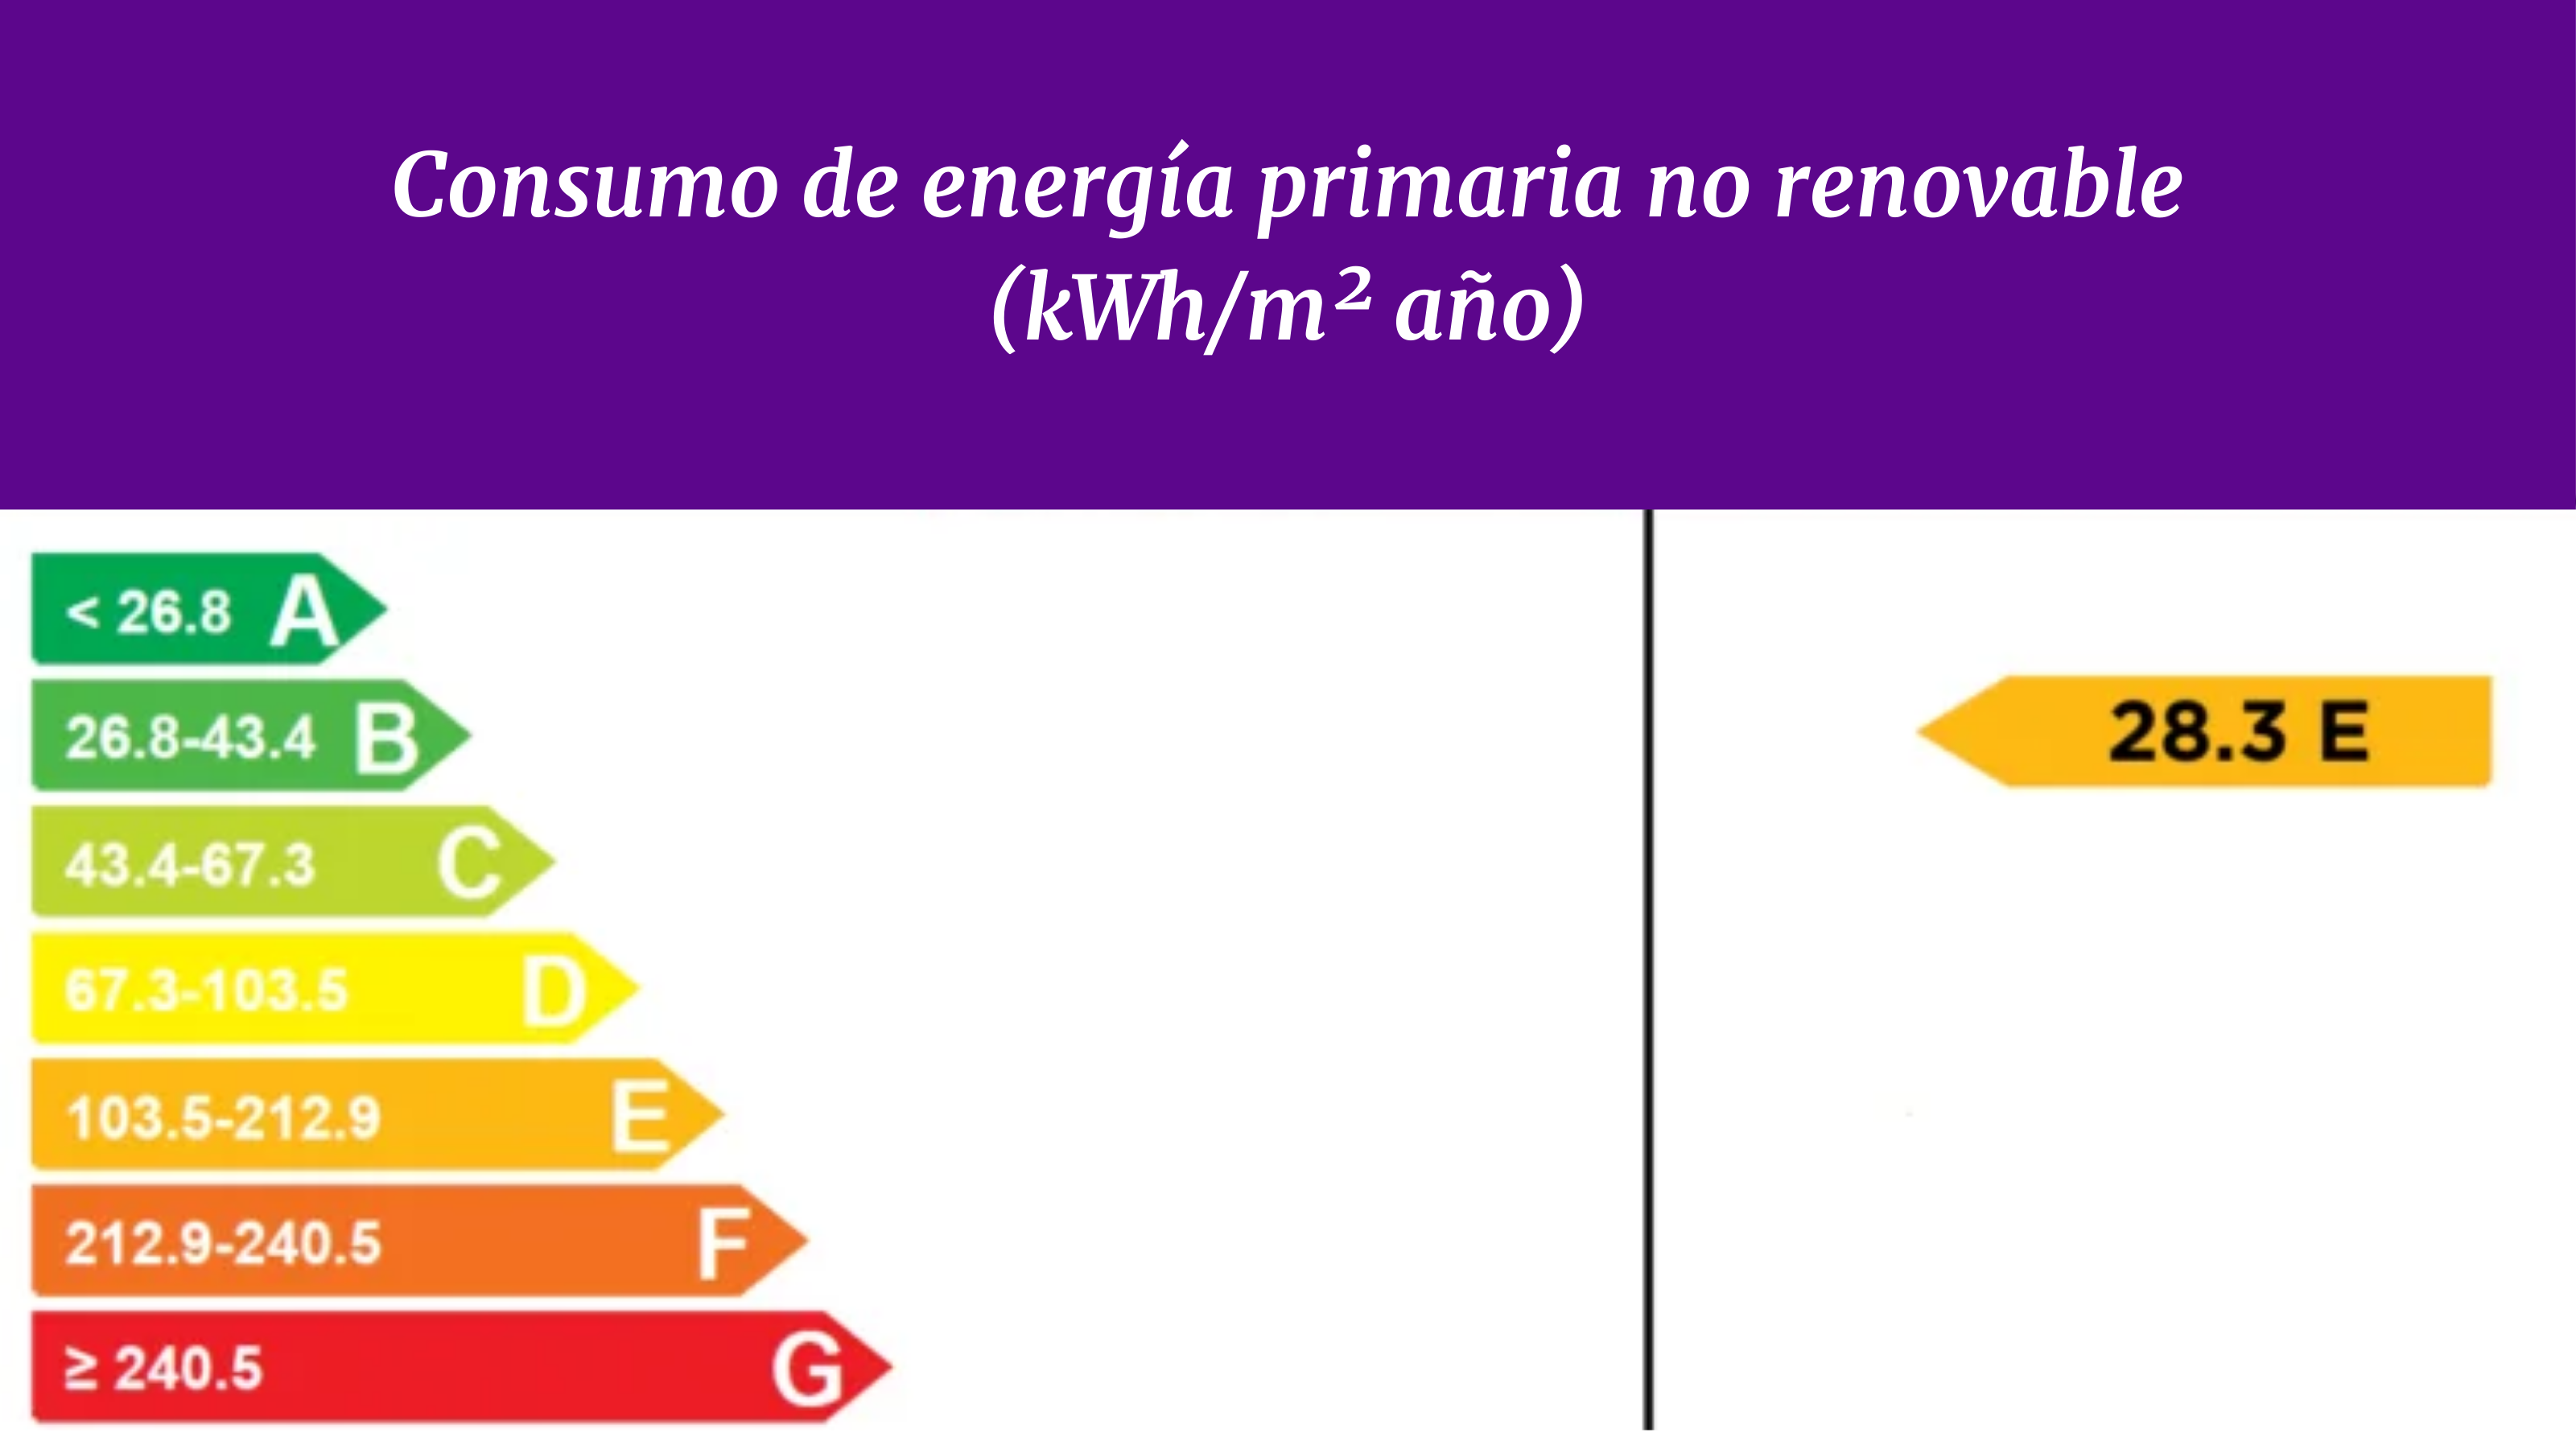 Consumo de energía primaria no renovable